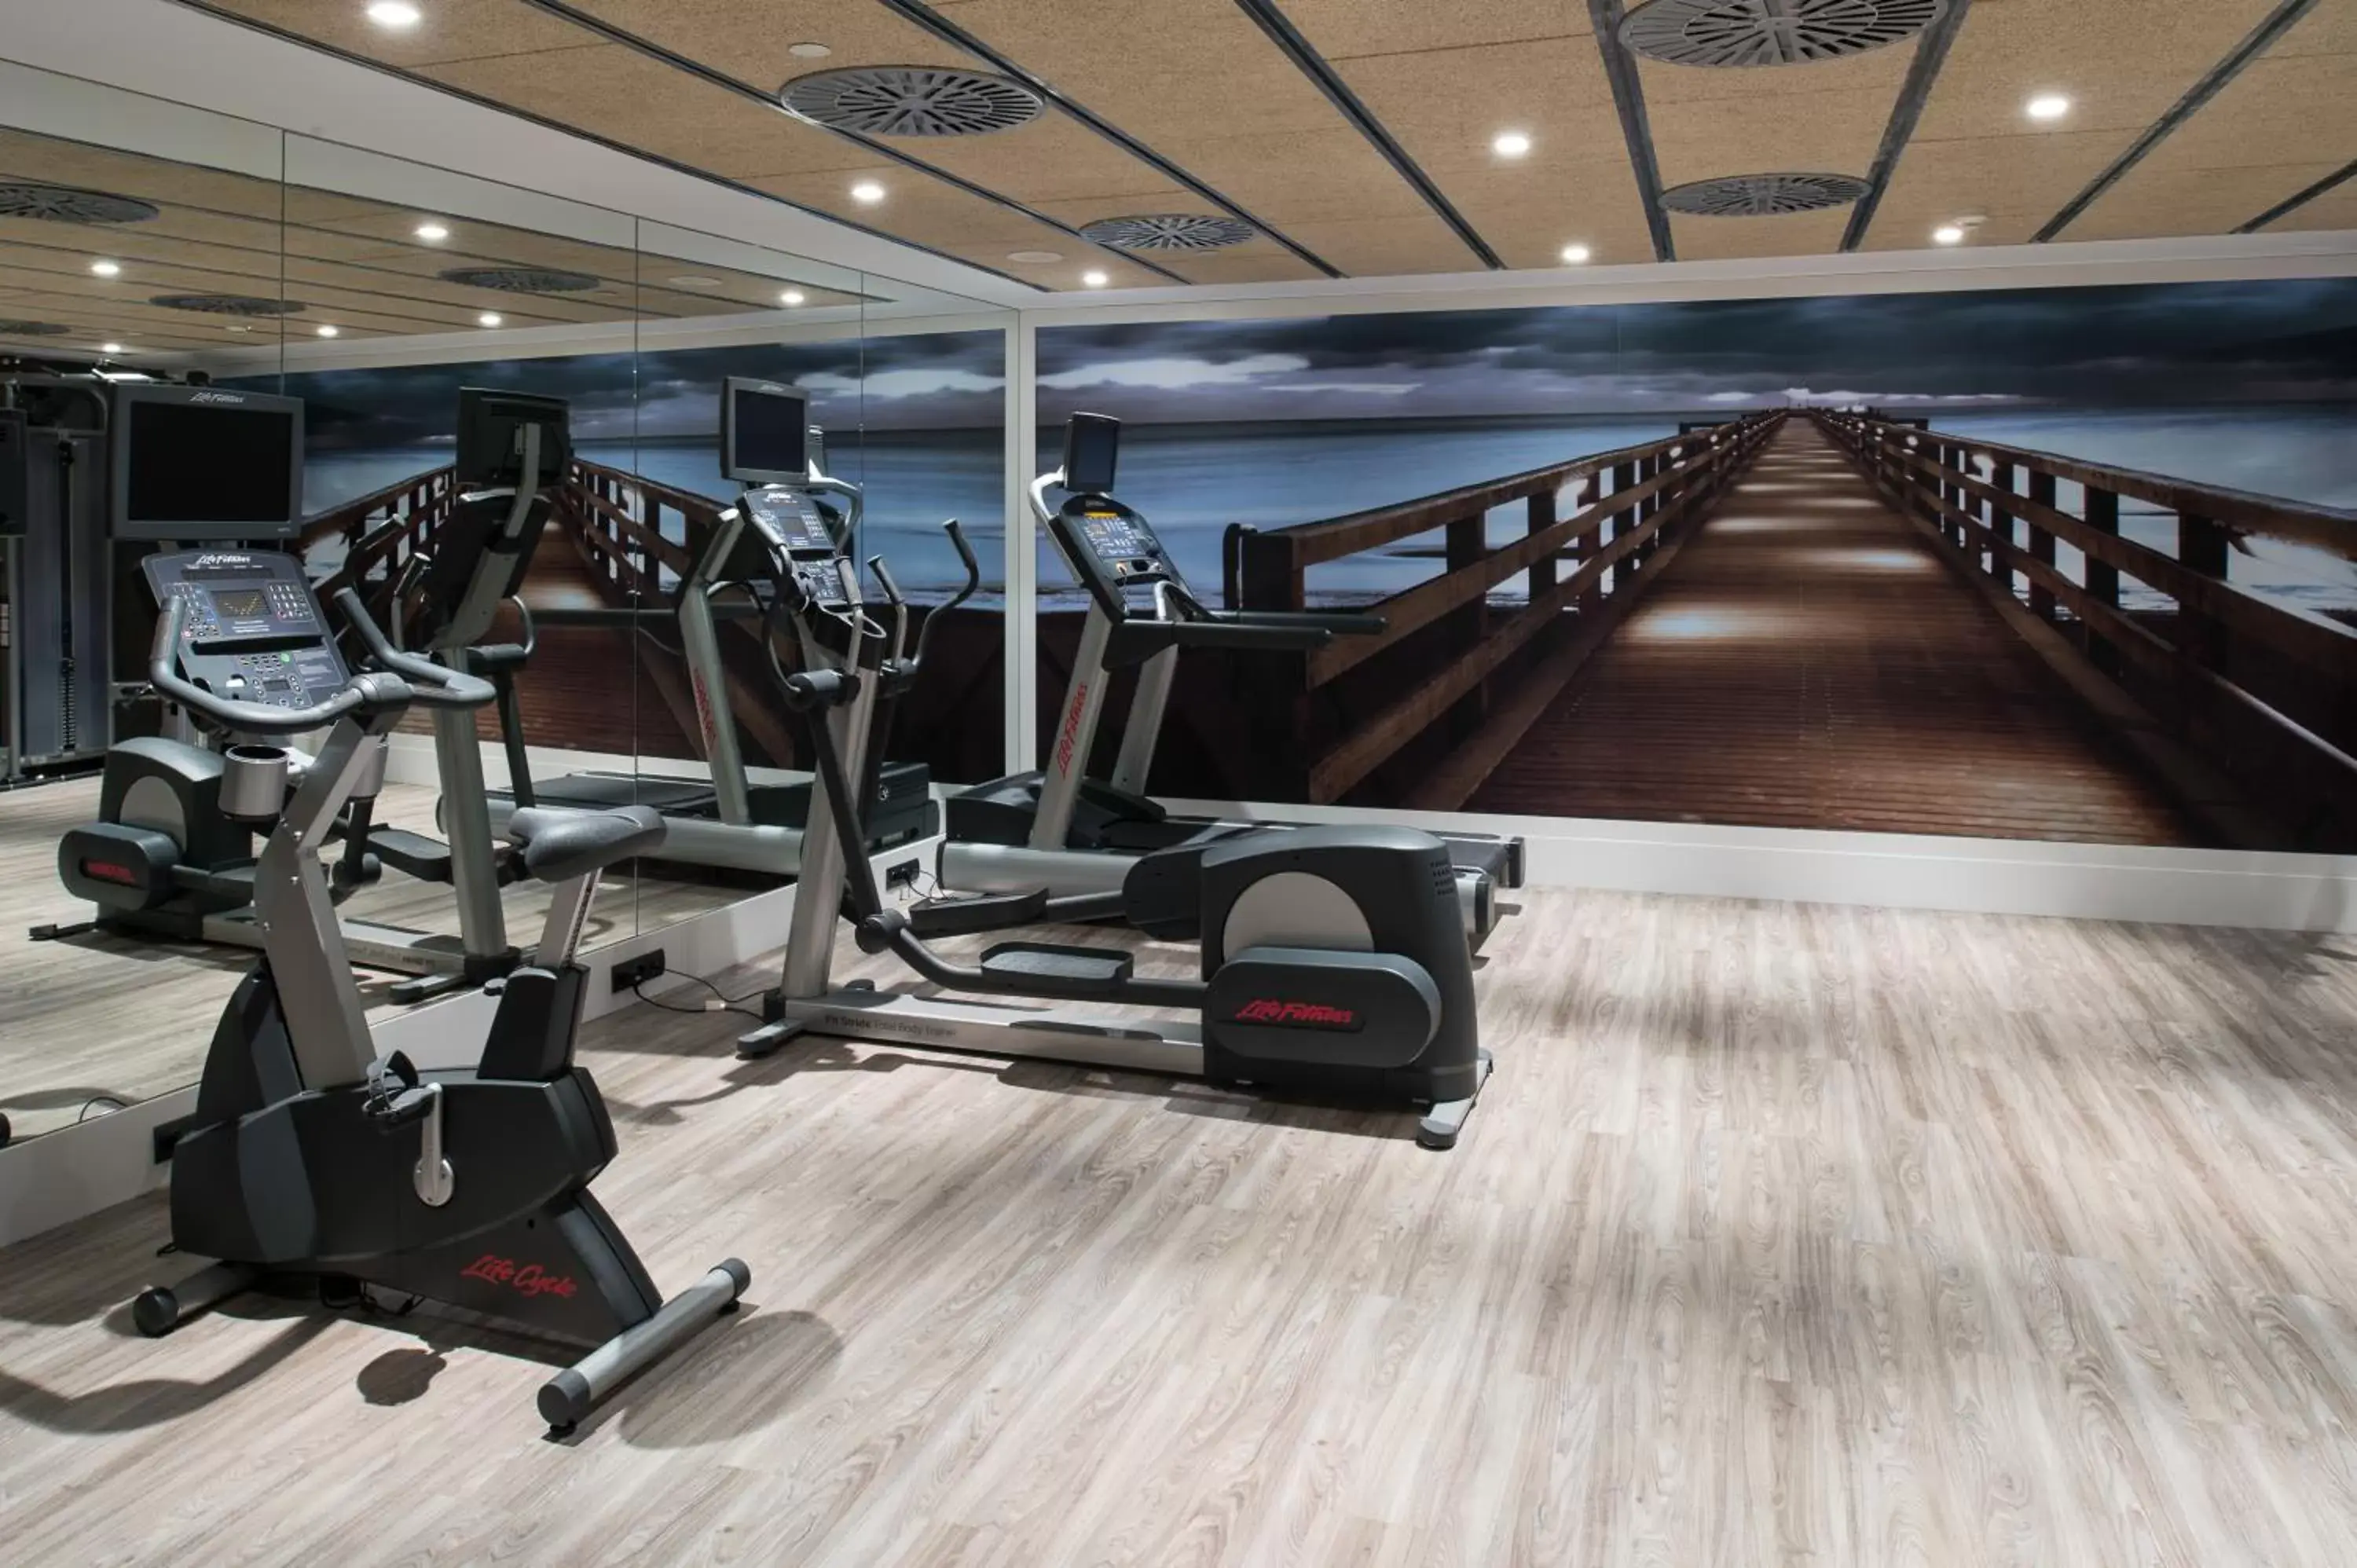 Fitness centre/facilities, Fitness Center/Facilities in Catalonia Avinyo